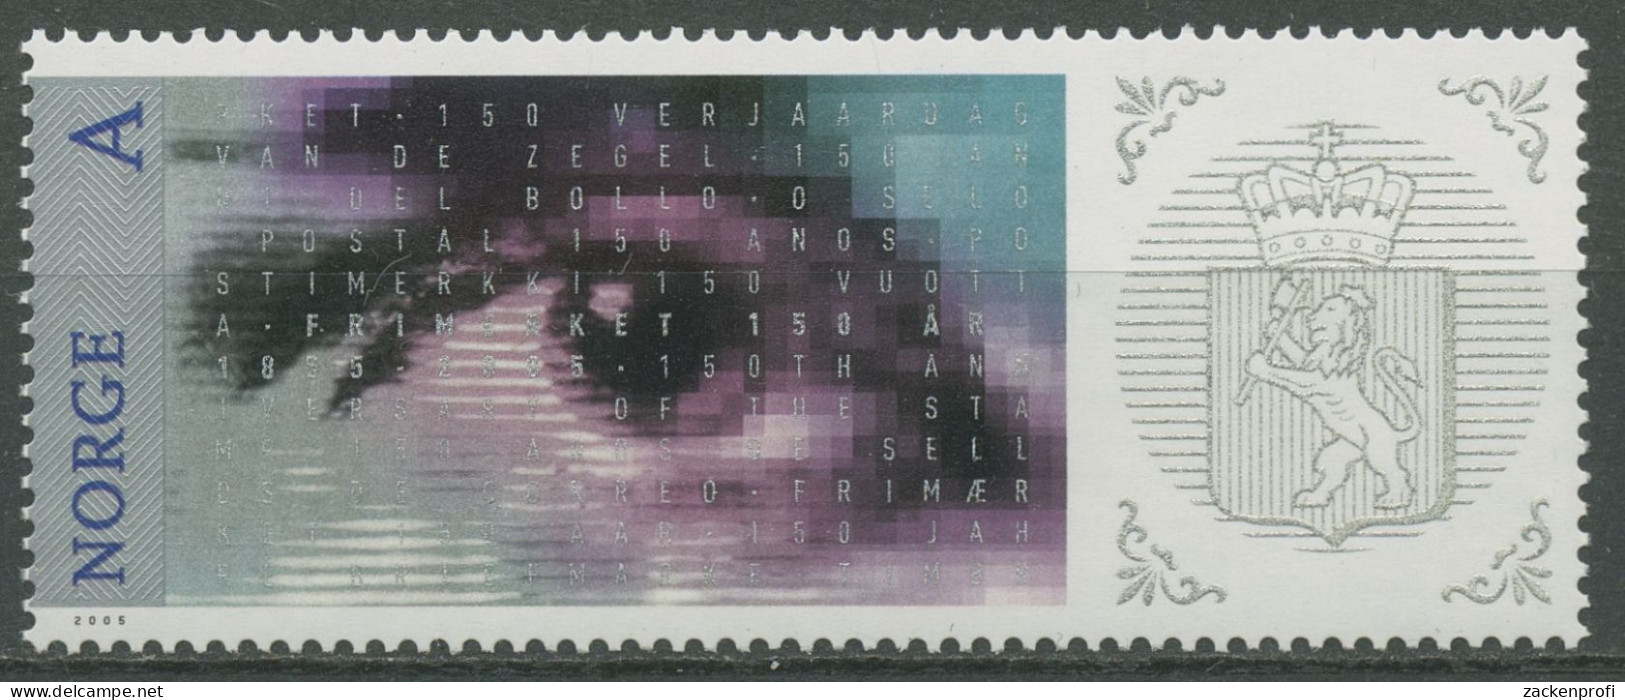 Norwegen 2005 Briefmarken Motiv MiNr.1, Auge 1554 Postfrisch - Nuevos